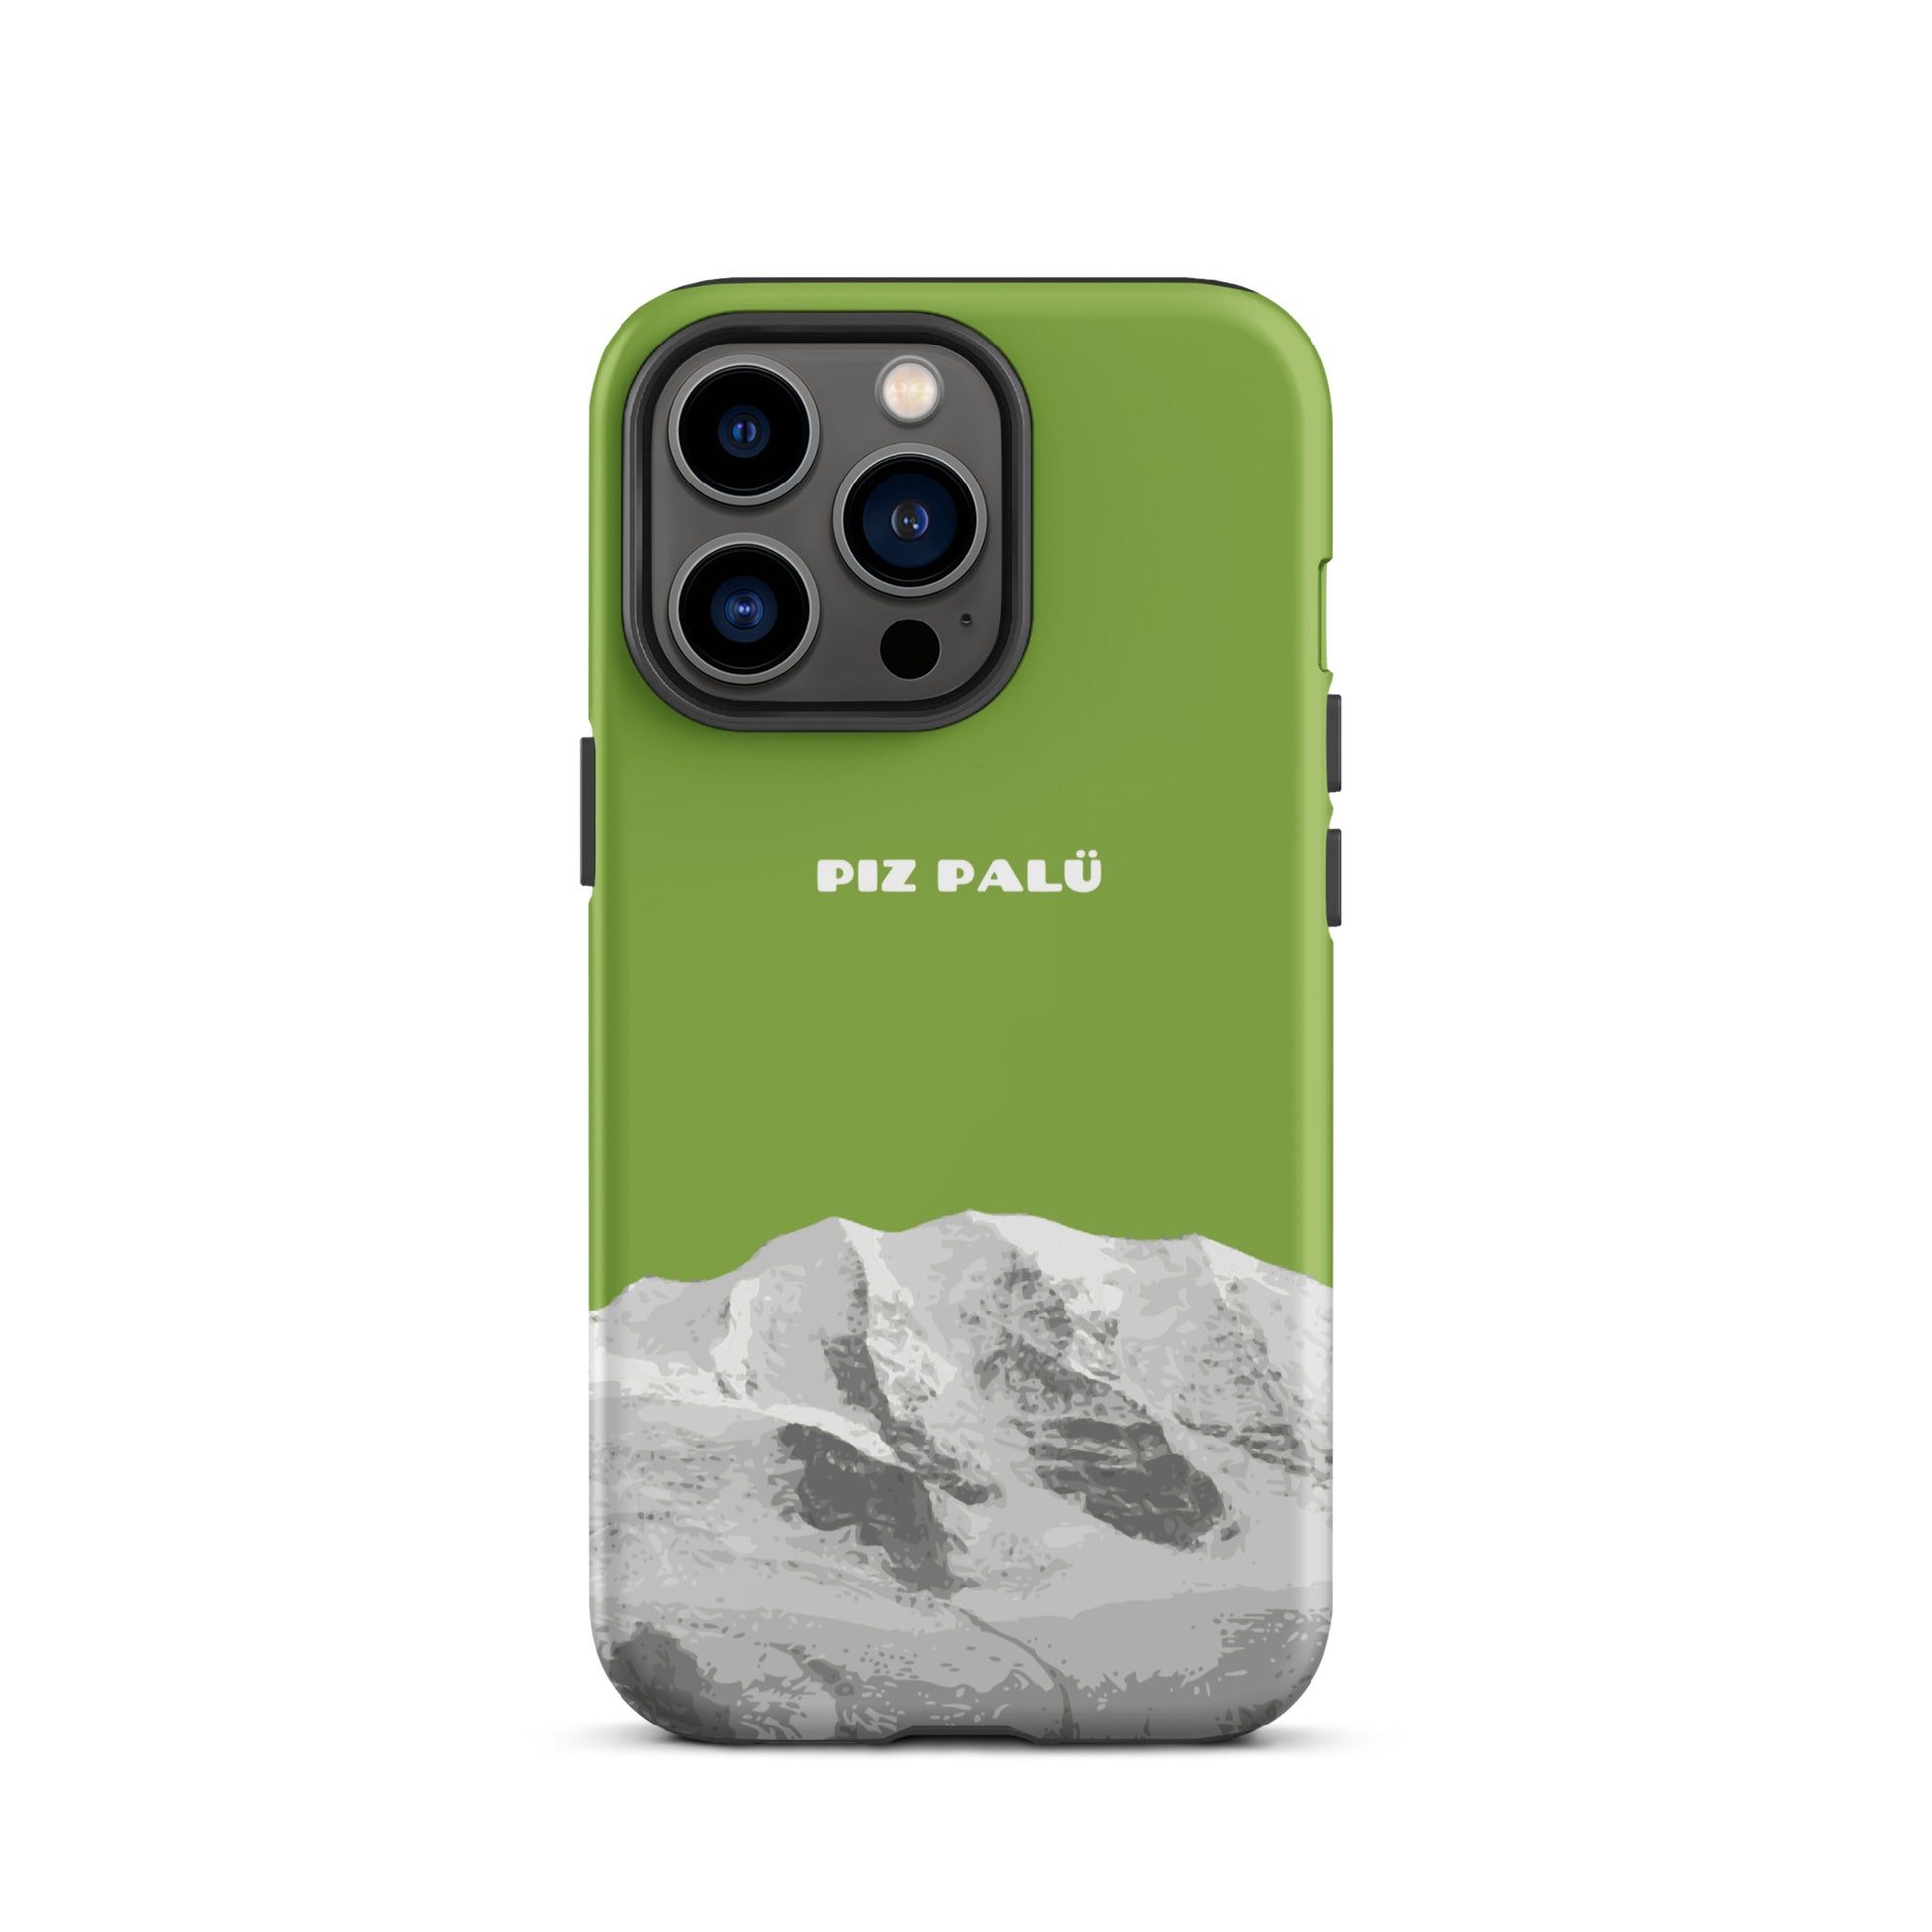 Hülle für das iPhone 13 Pro von Apple in der Farbe Gelbgrün, dass den Piz Palü in Graubünden zeigt. 